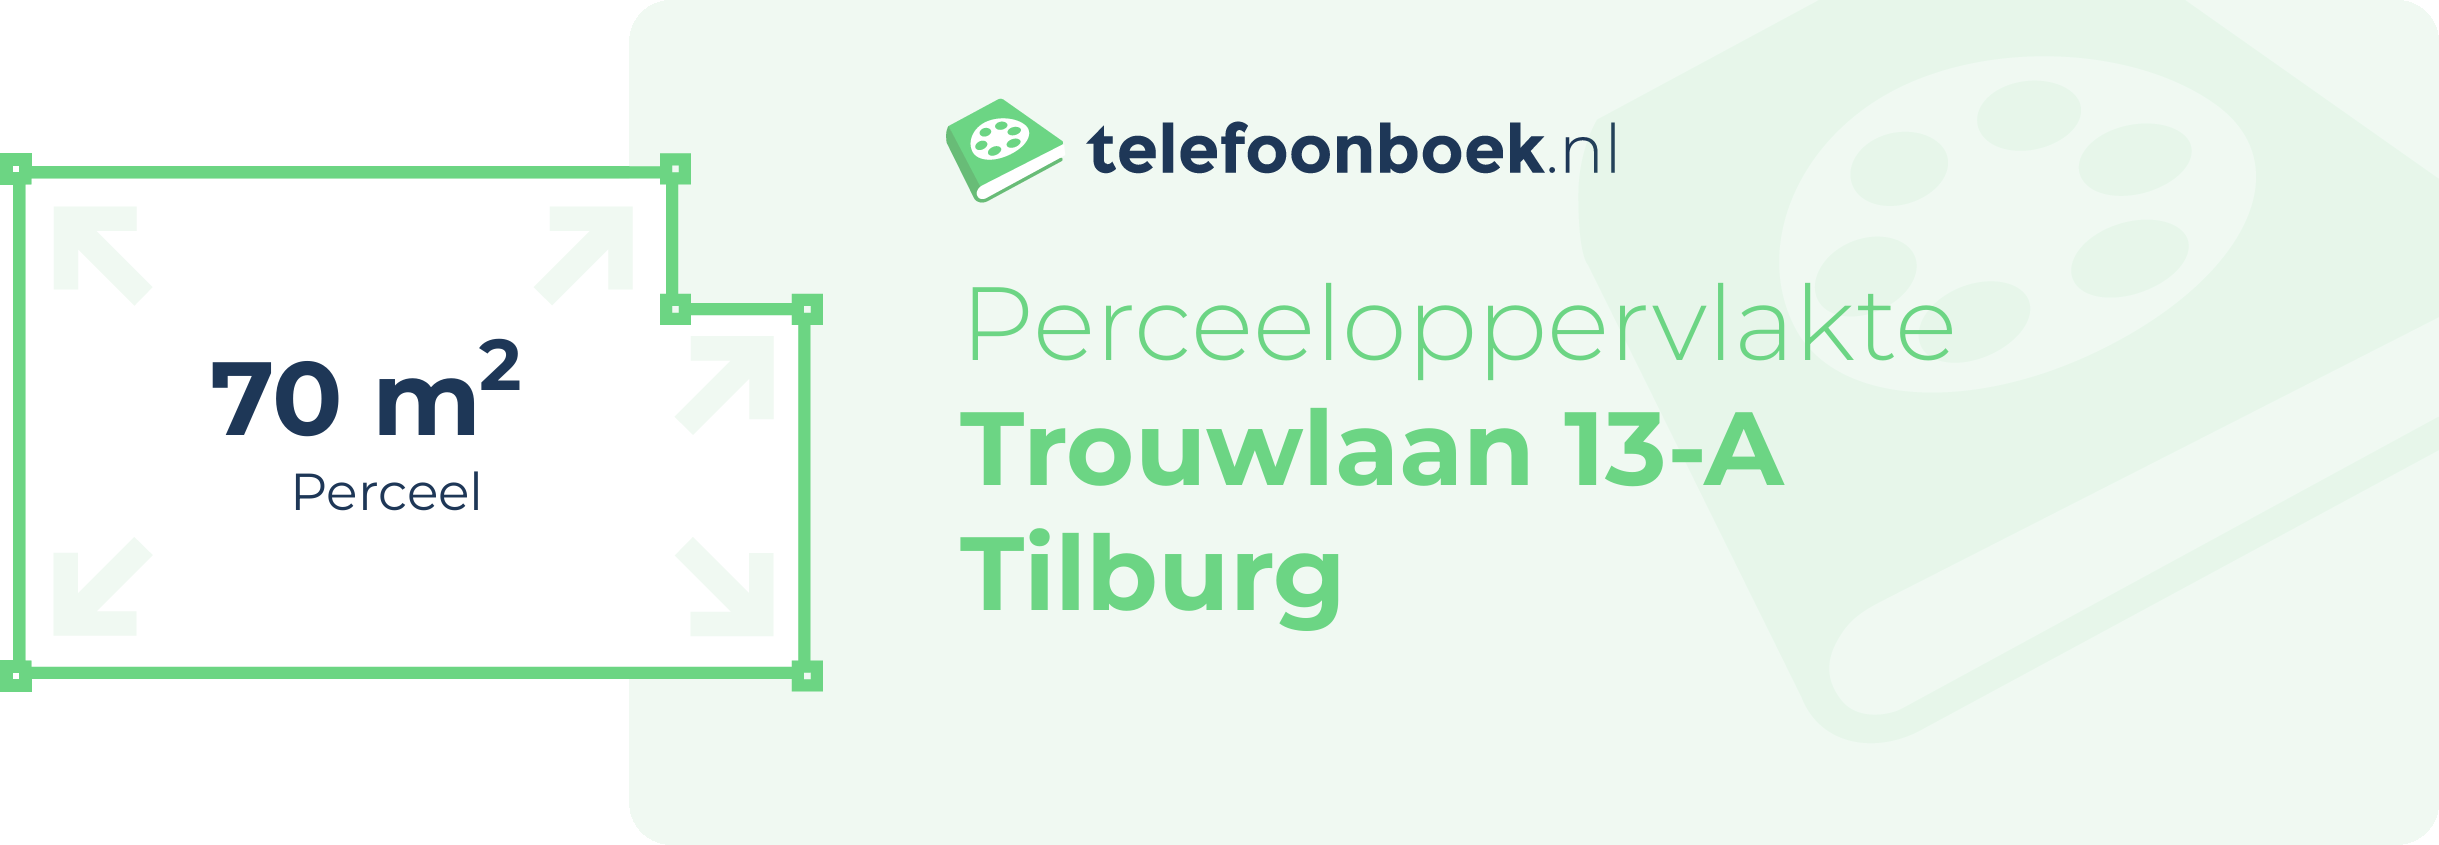 Perceeloppervlakte Trouwlaan 13-A Tilburg